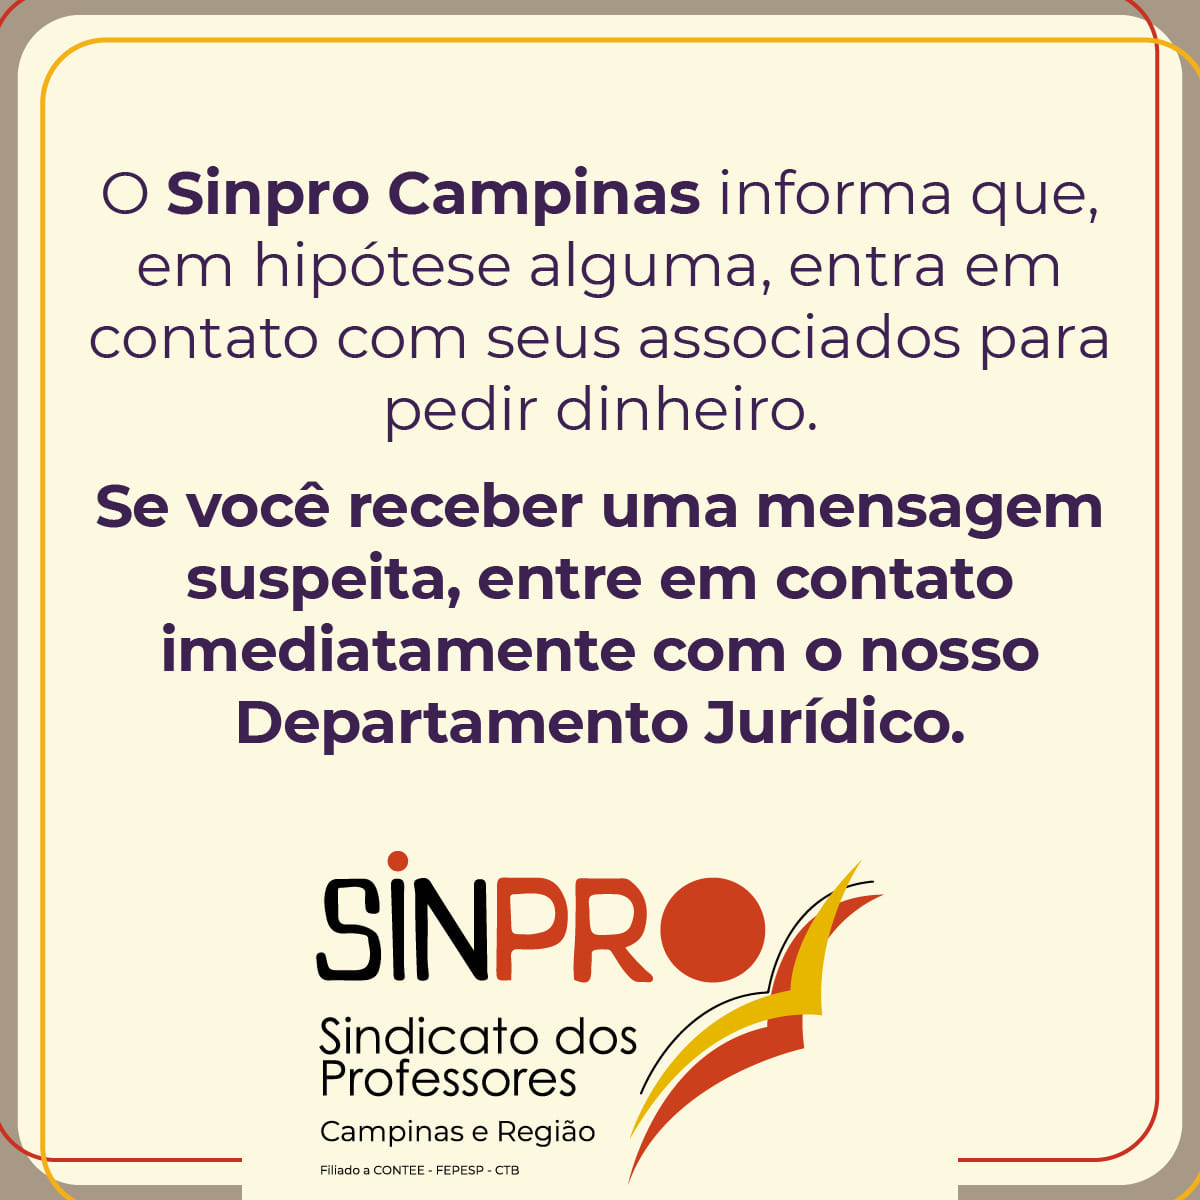 O Sinpro Campinas informa que, em hipótese alguma, entra em contato com seus associados para pedir dinheiro.